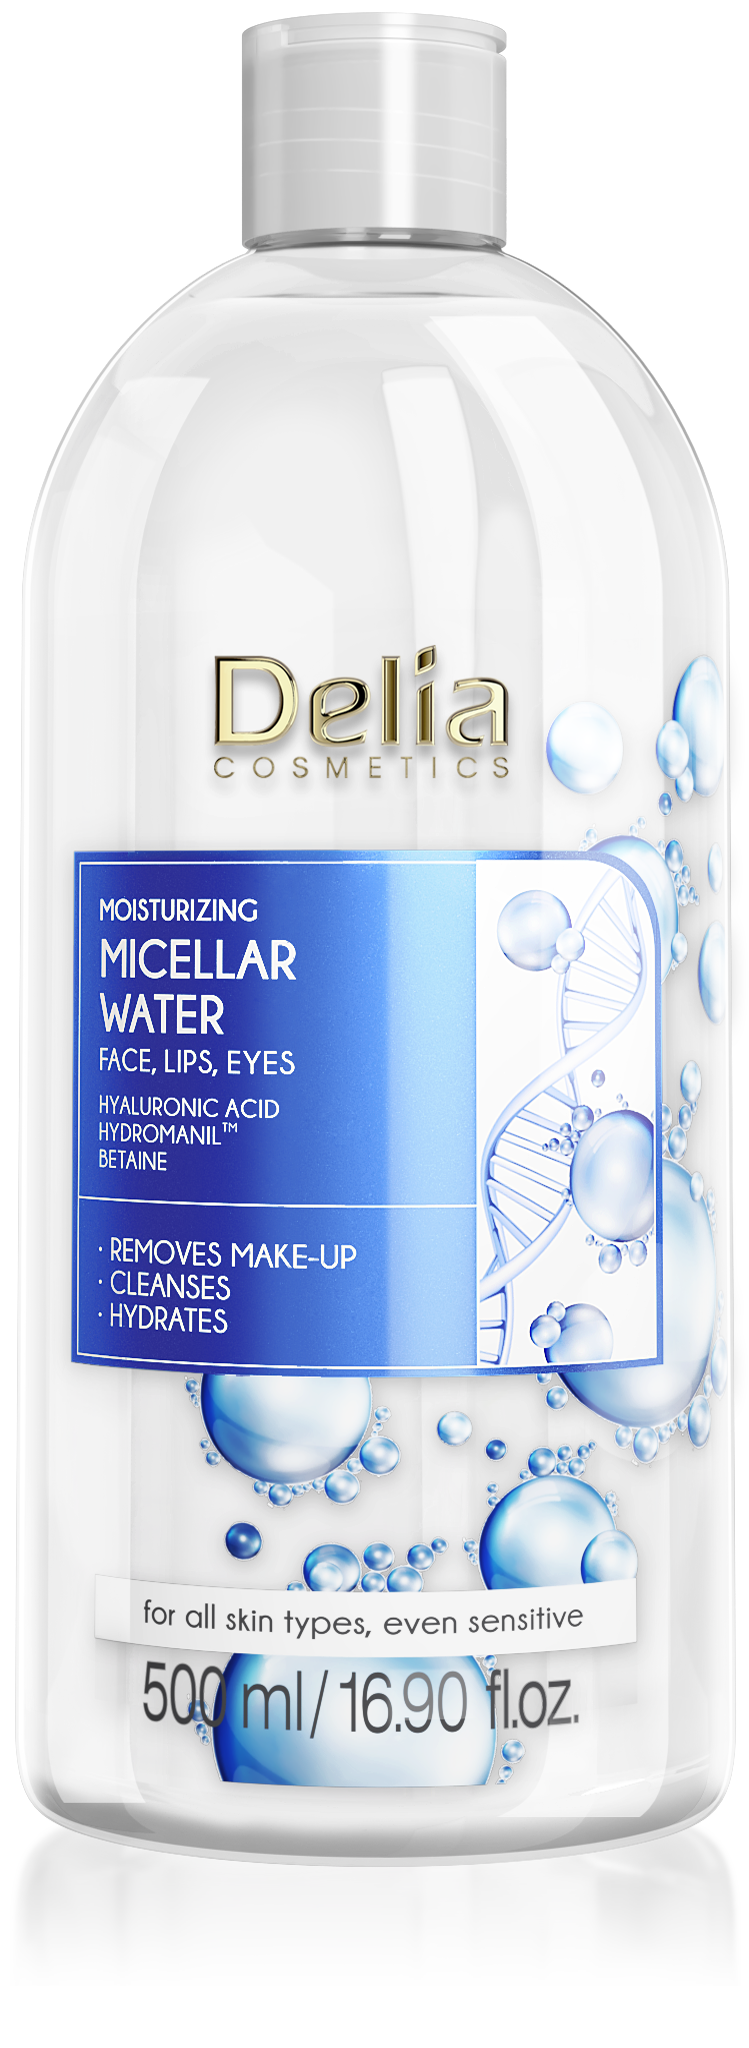 Nước tẩy trang DELIA Micellar dưỡng ẩm da